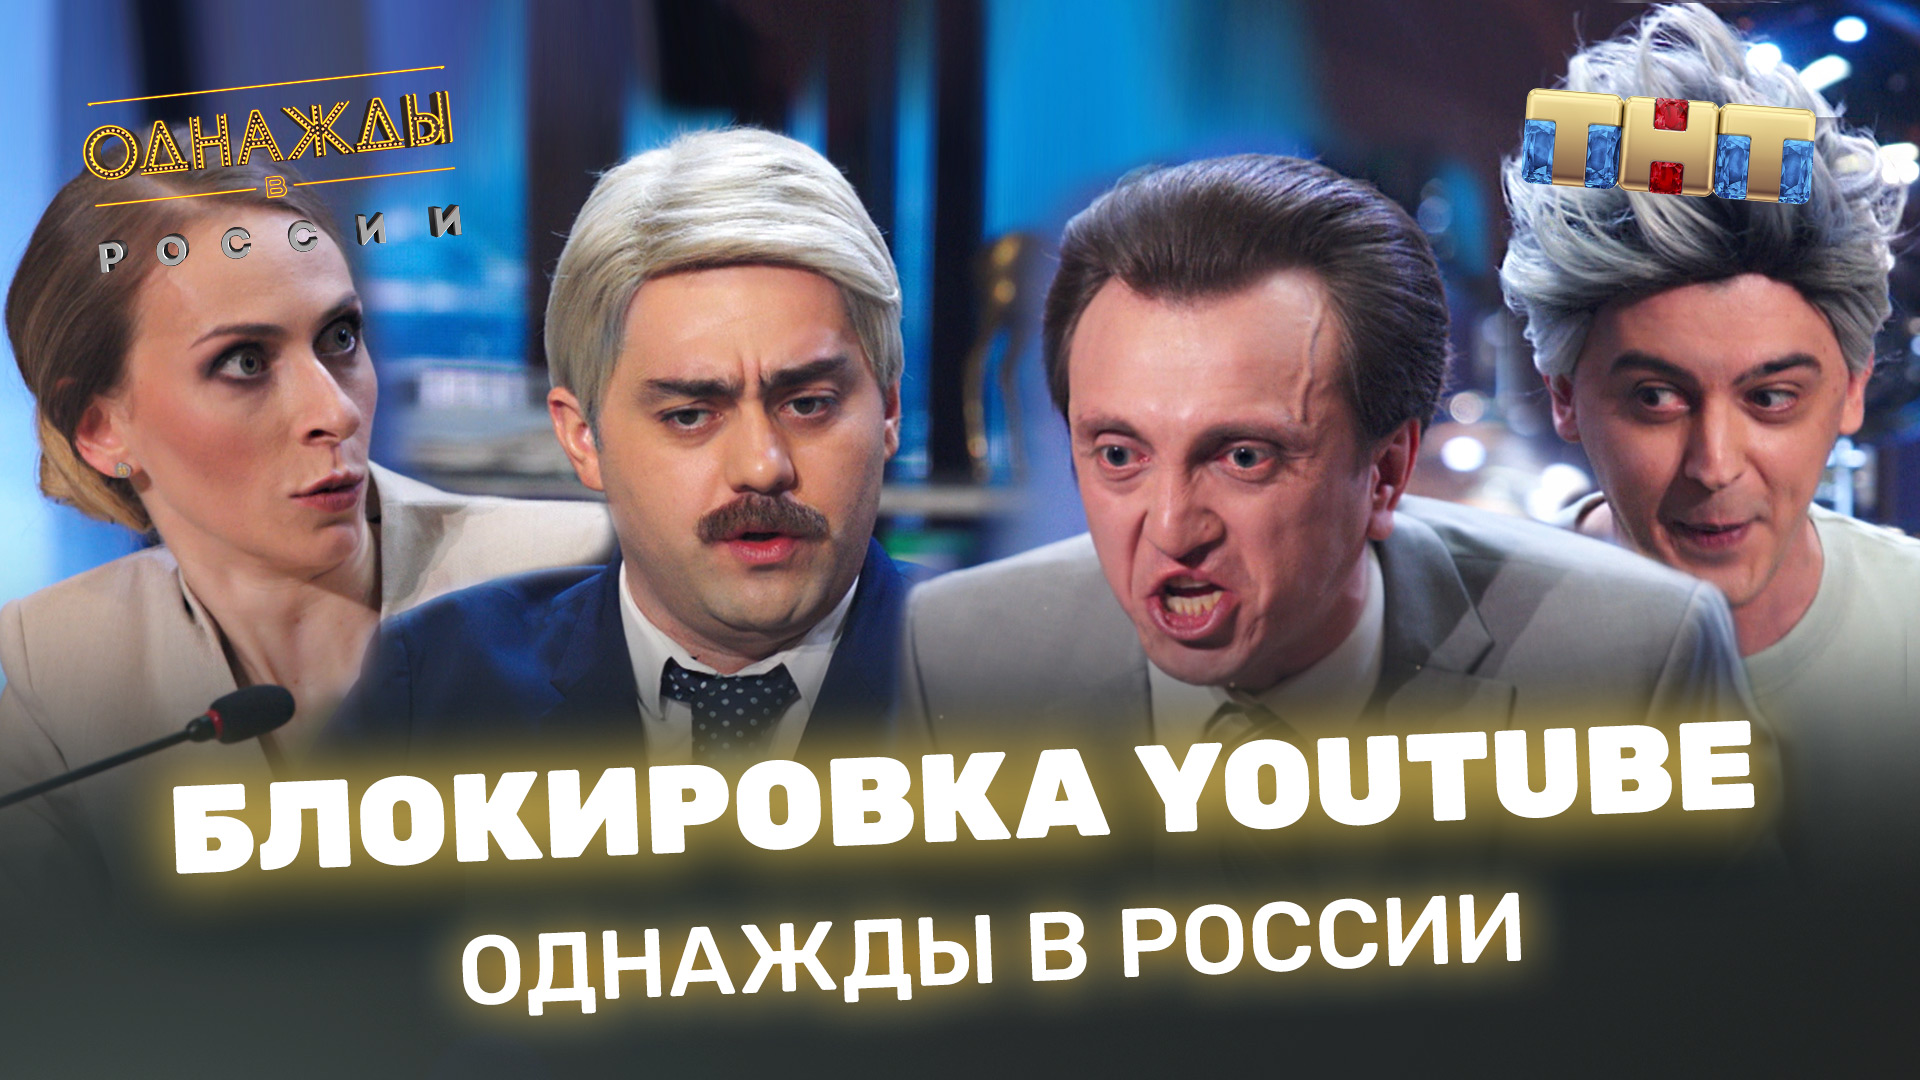 Однажды в России: Блокировка YouTube!